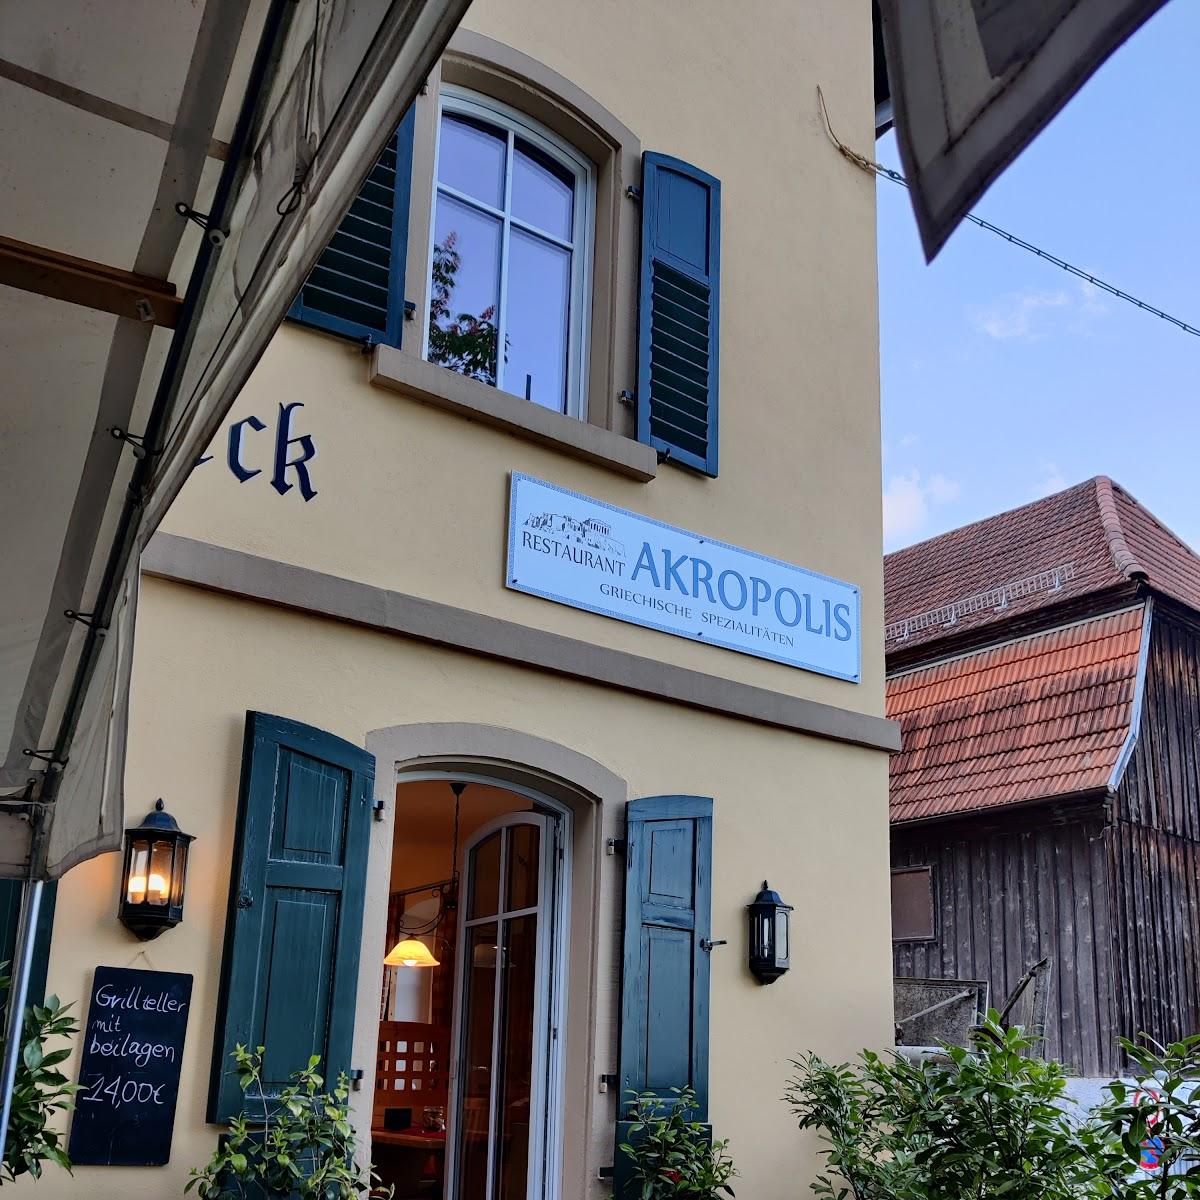 Restaurant "Restaurant AKROPOLIS" in Marktrodach